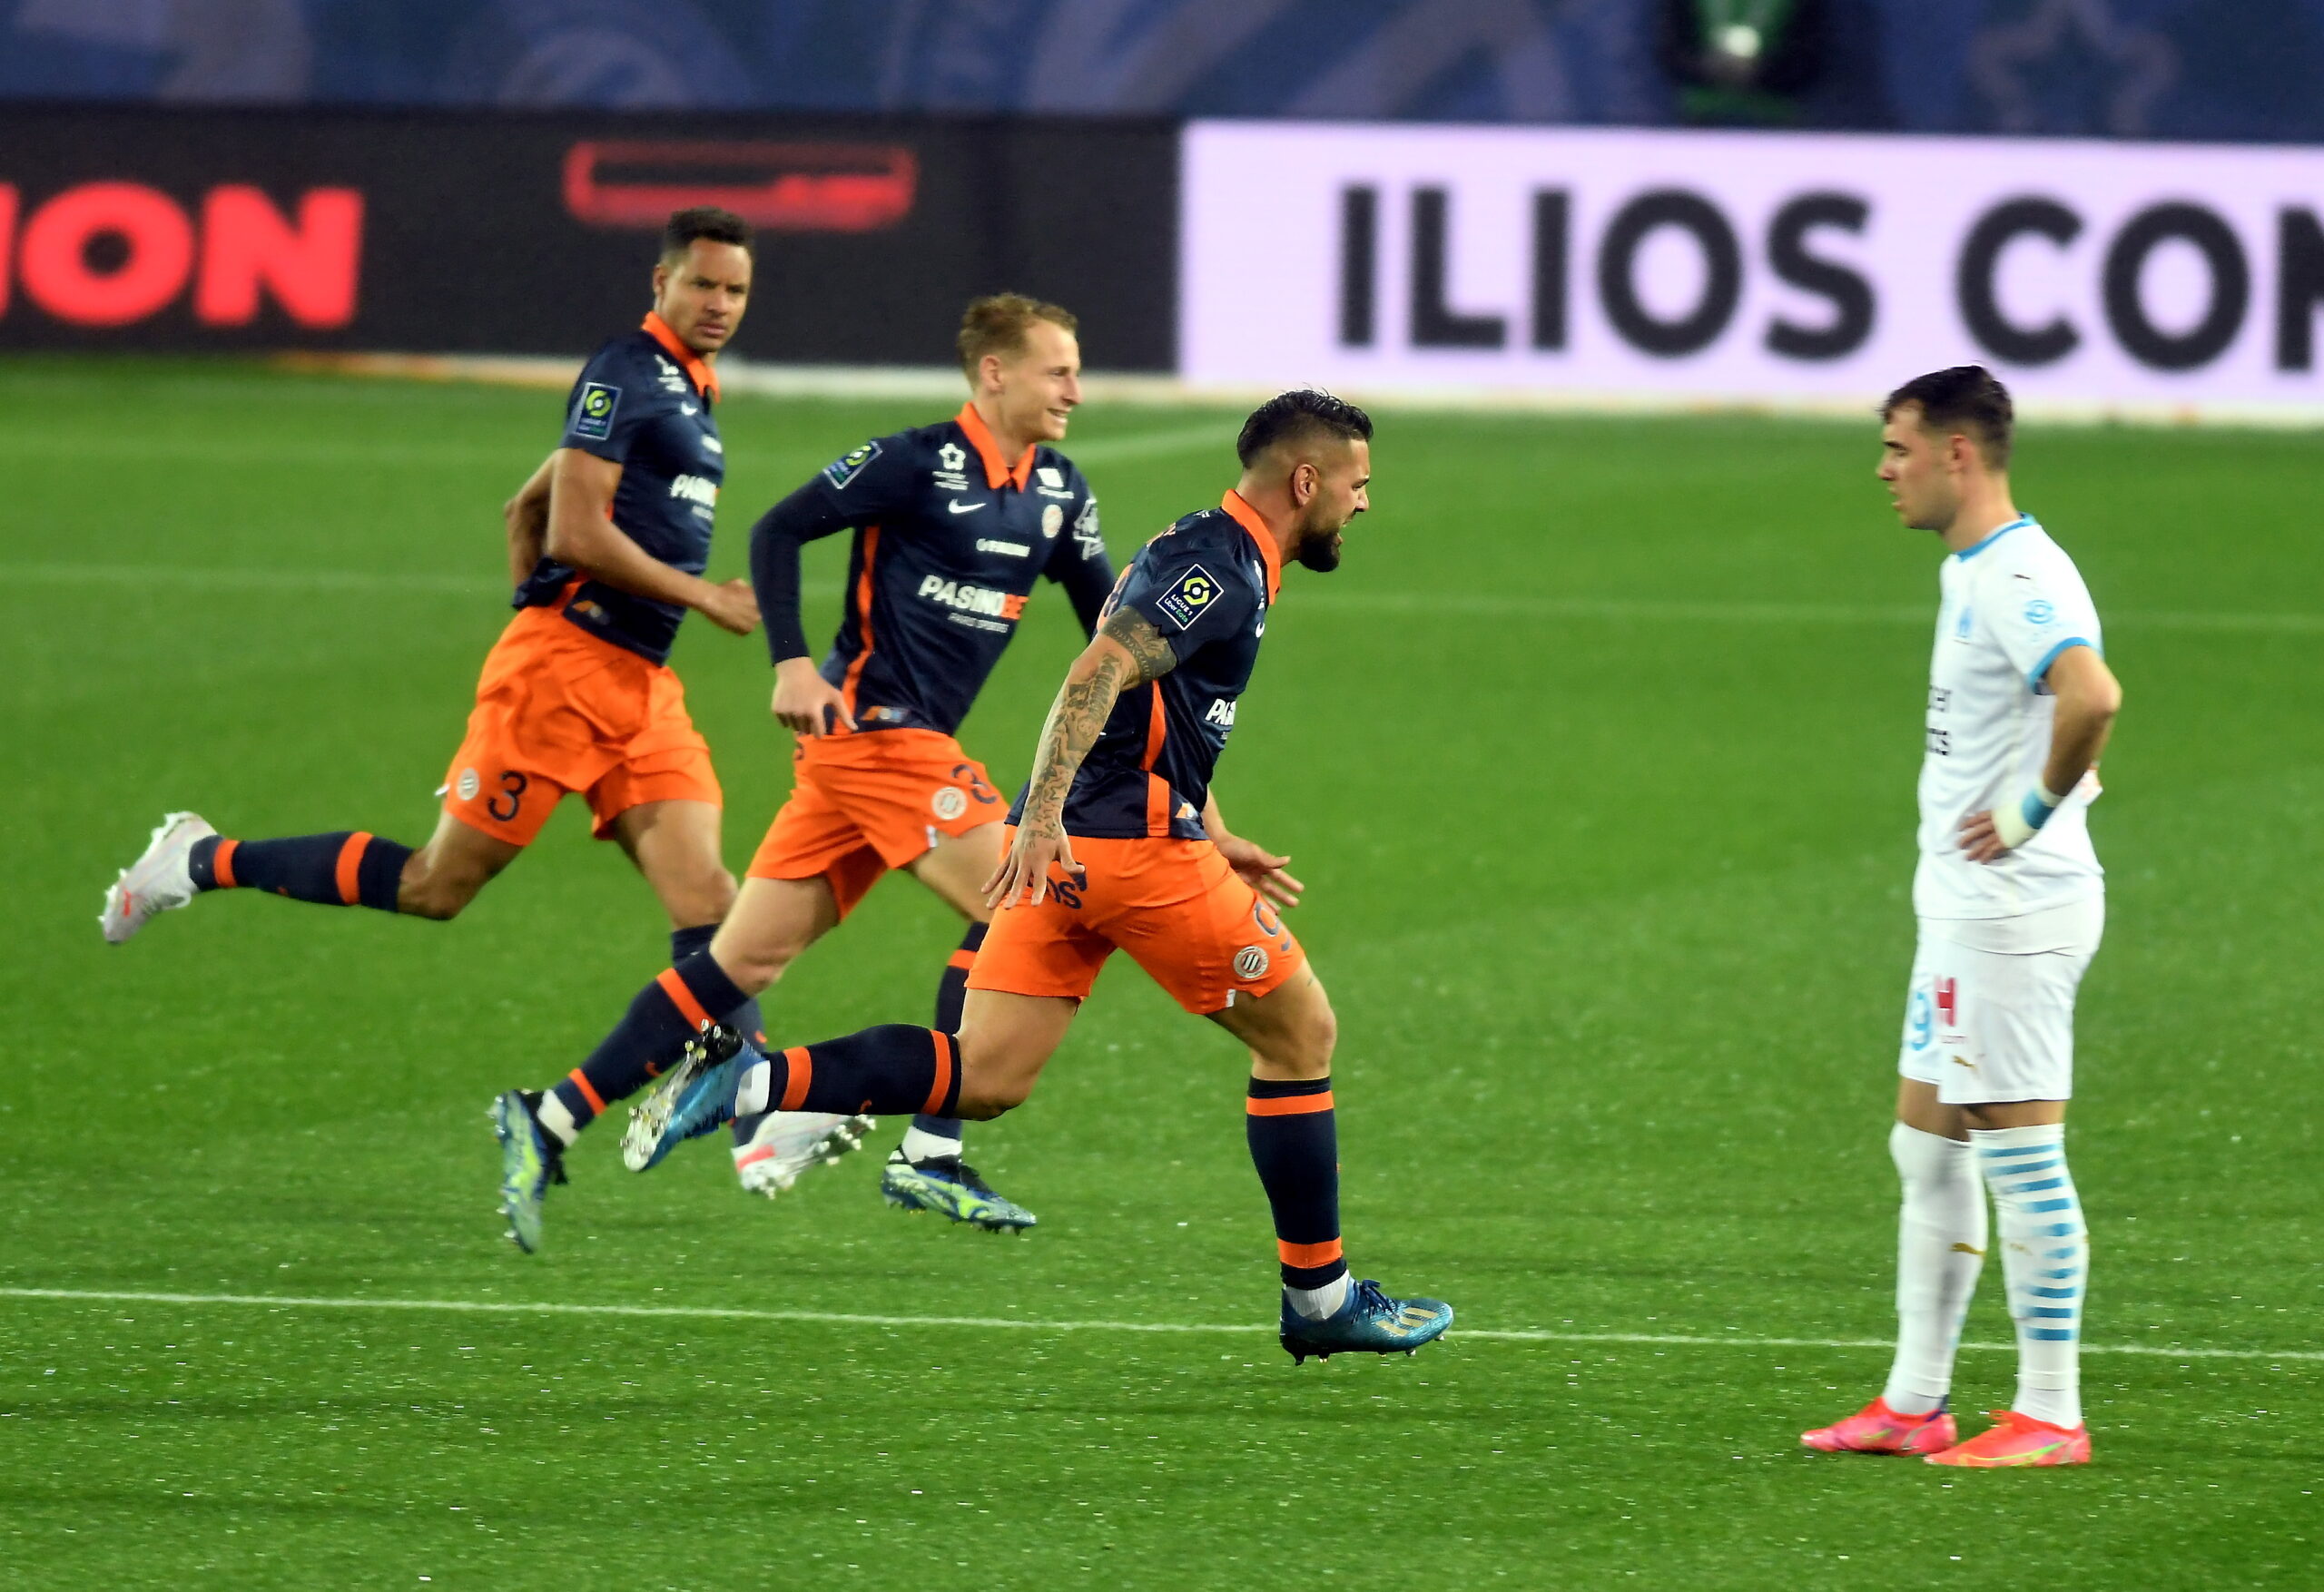 Ligue 1 : l’OM et Montpellier se neutralisent dans un match aux allures d’un Clasico